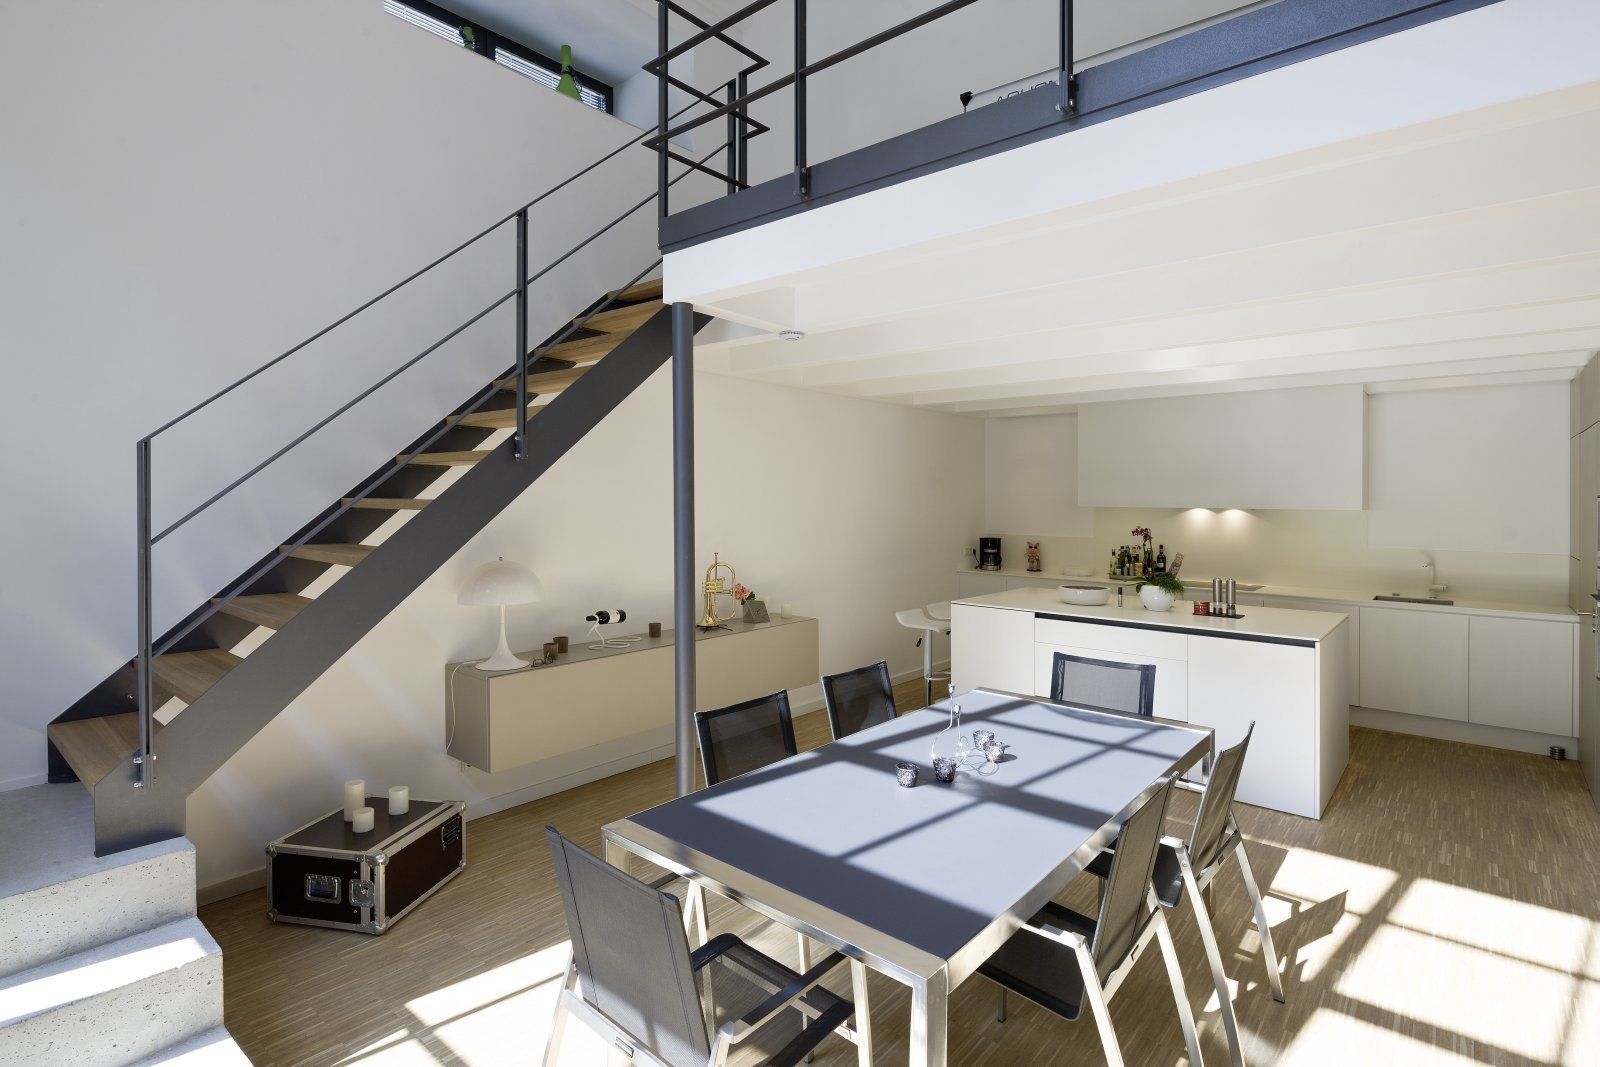 Lofts - Tuchfabrik, Hauser - Architektur Hauser - Architektur Dining room